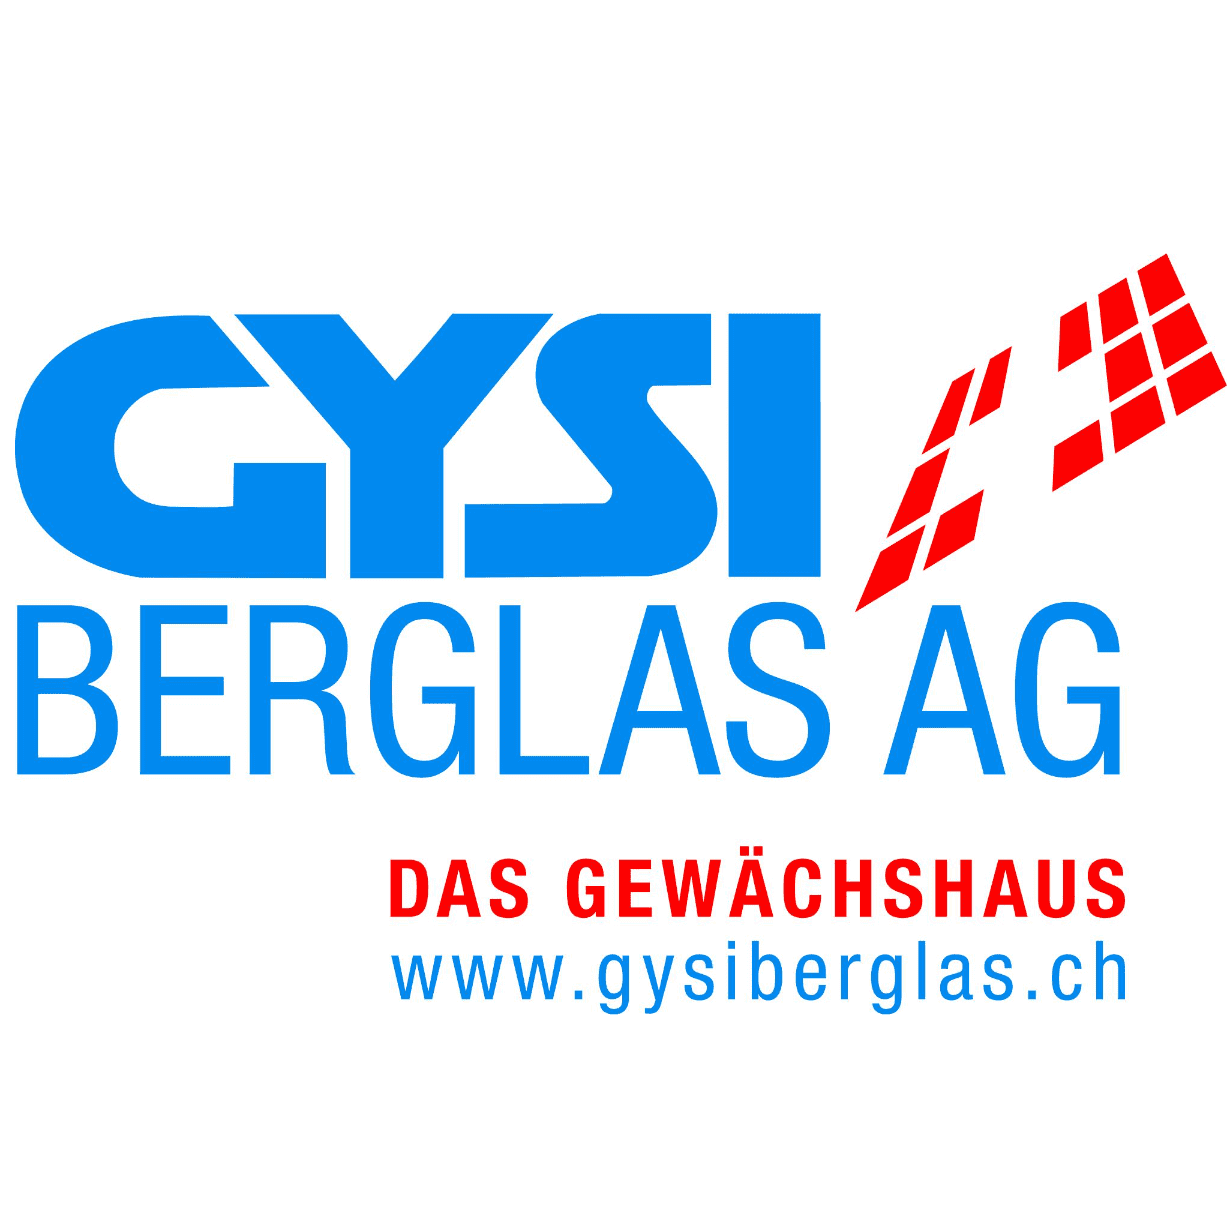 GYSI+BERGLAS AG